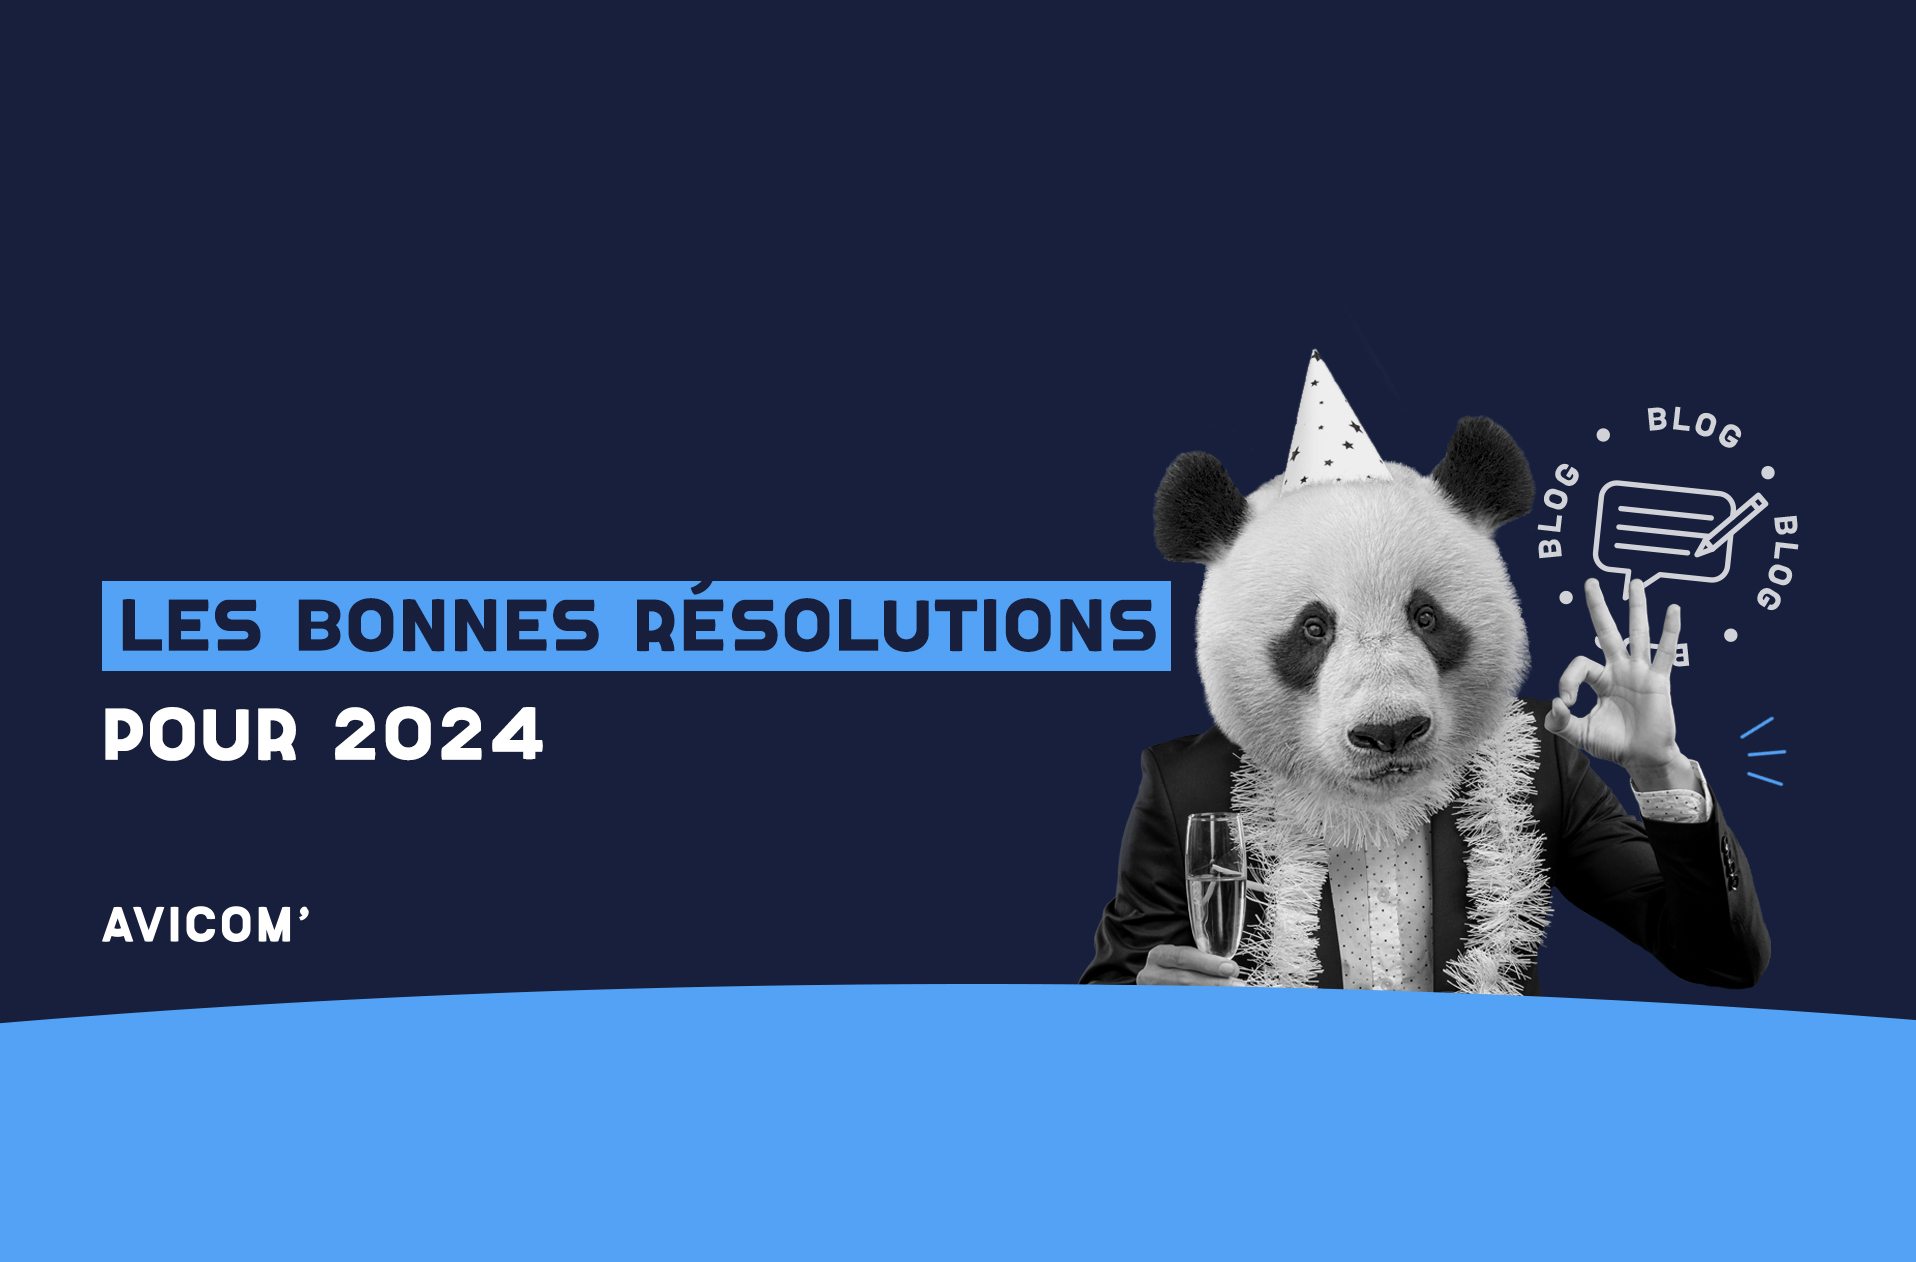 Les bonnes résolutions pour 2024